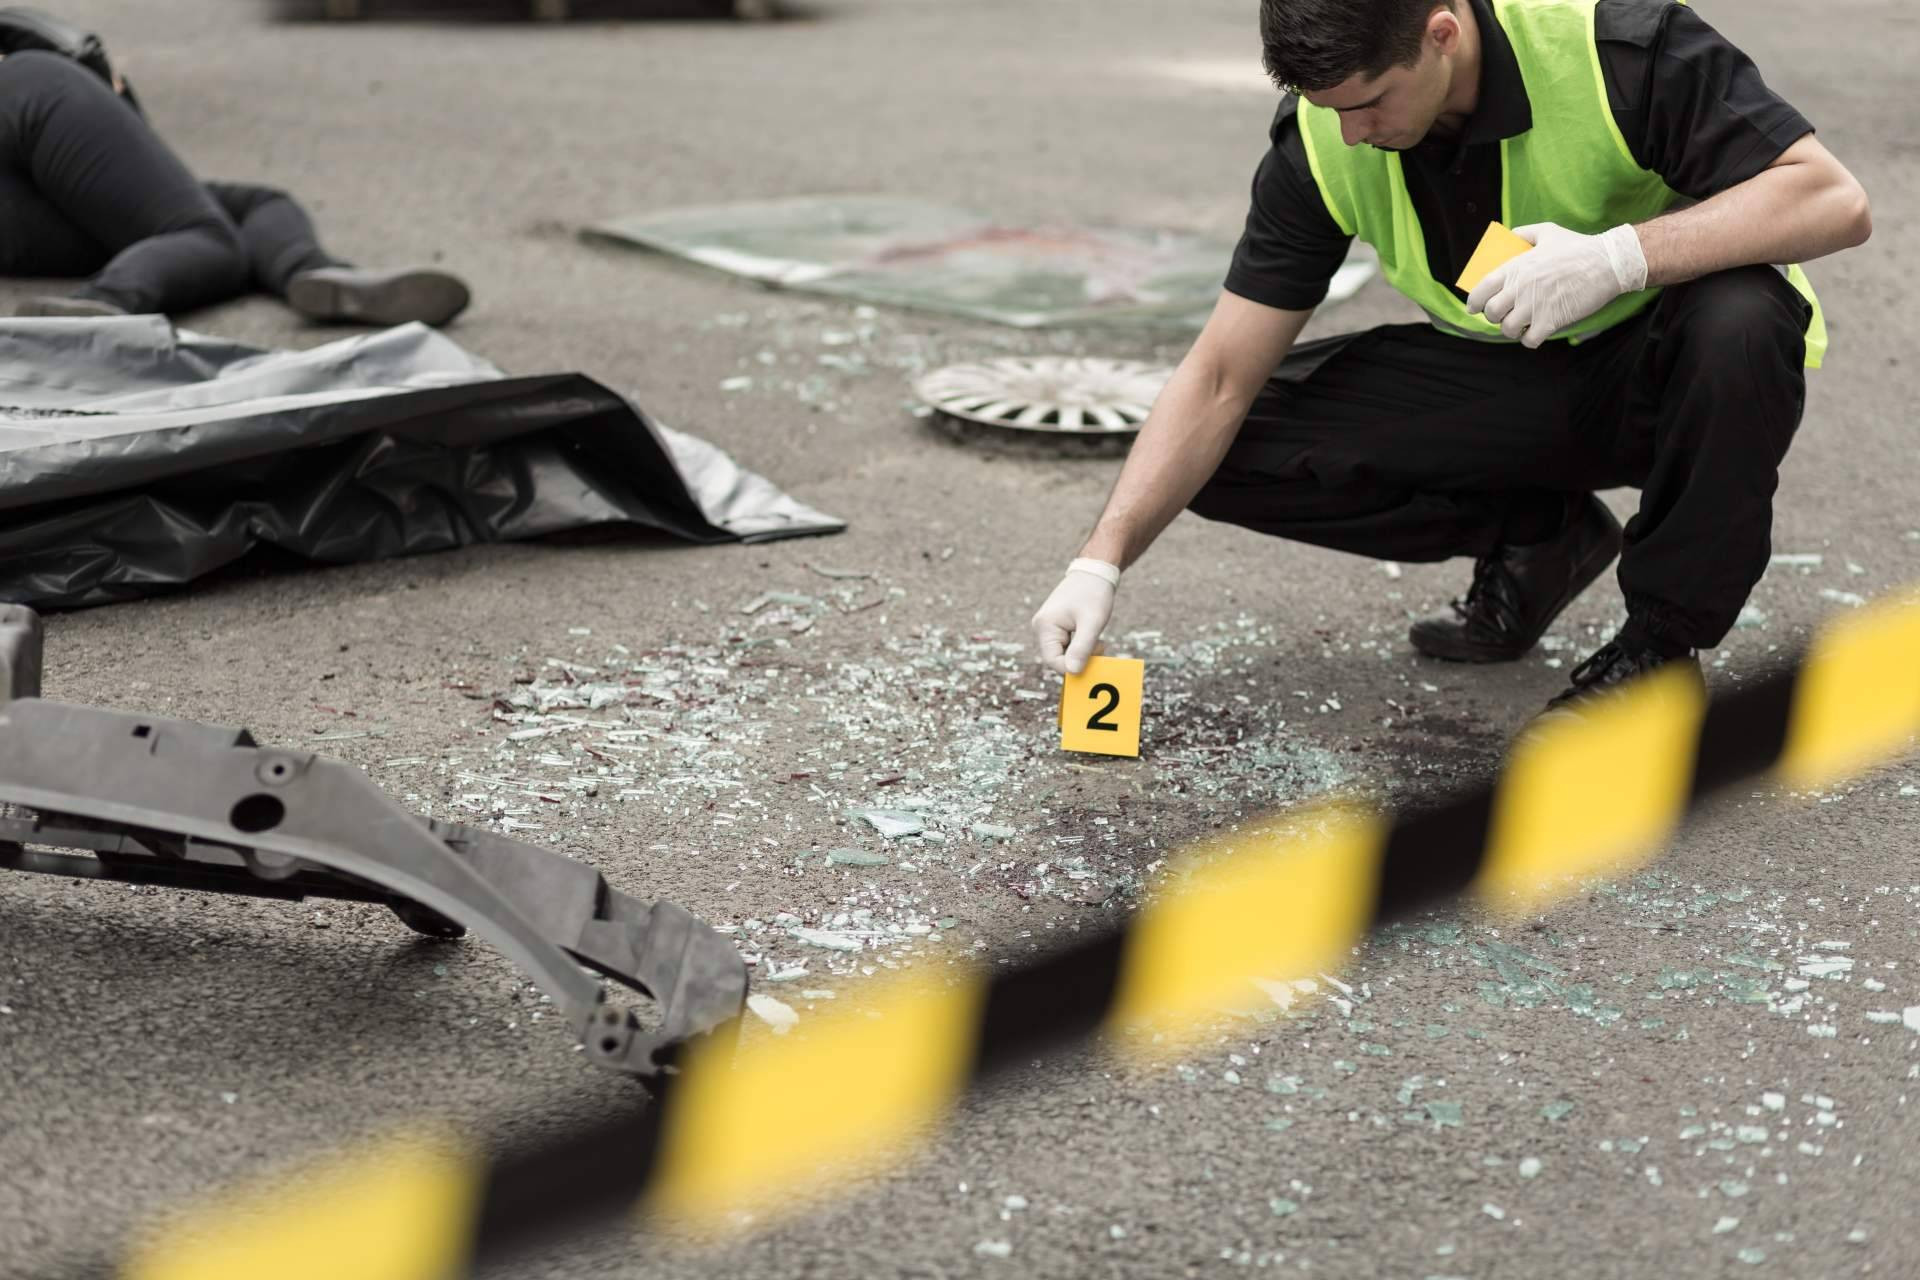  Las reconstrucciones de tráfico 3D pueden probar la responsabilidad en accidentes de tráfico 